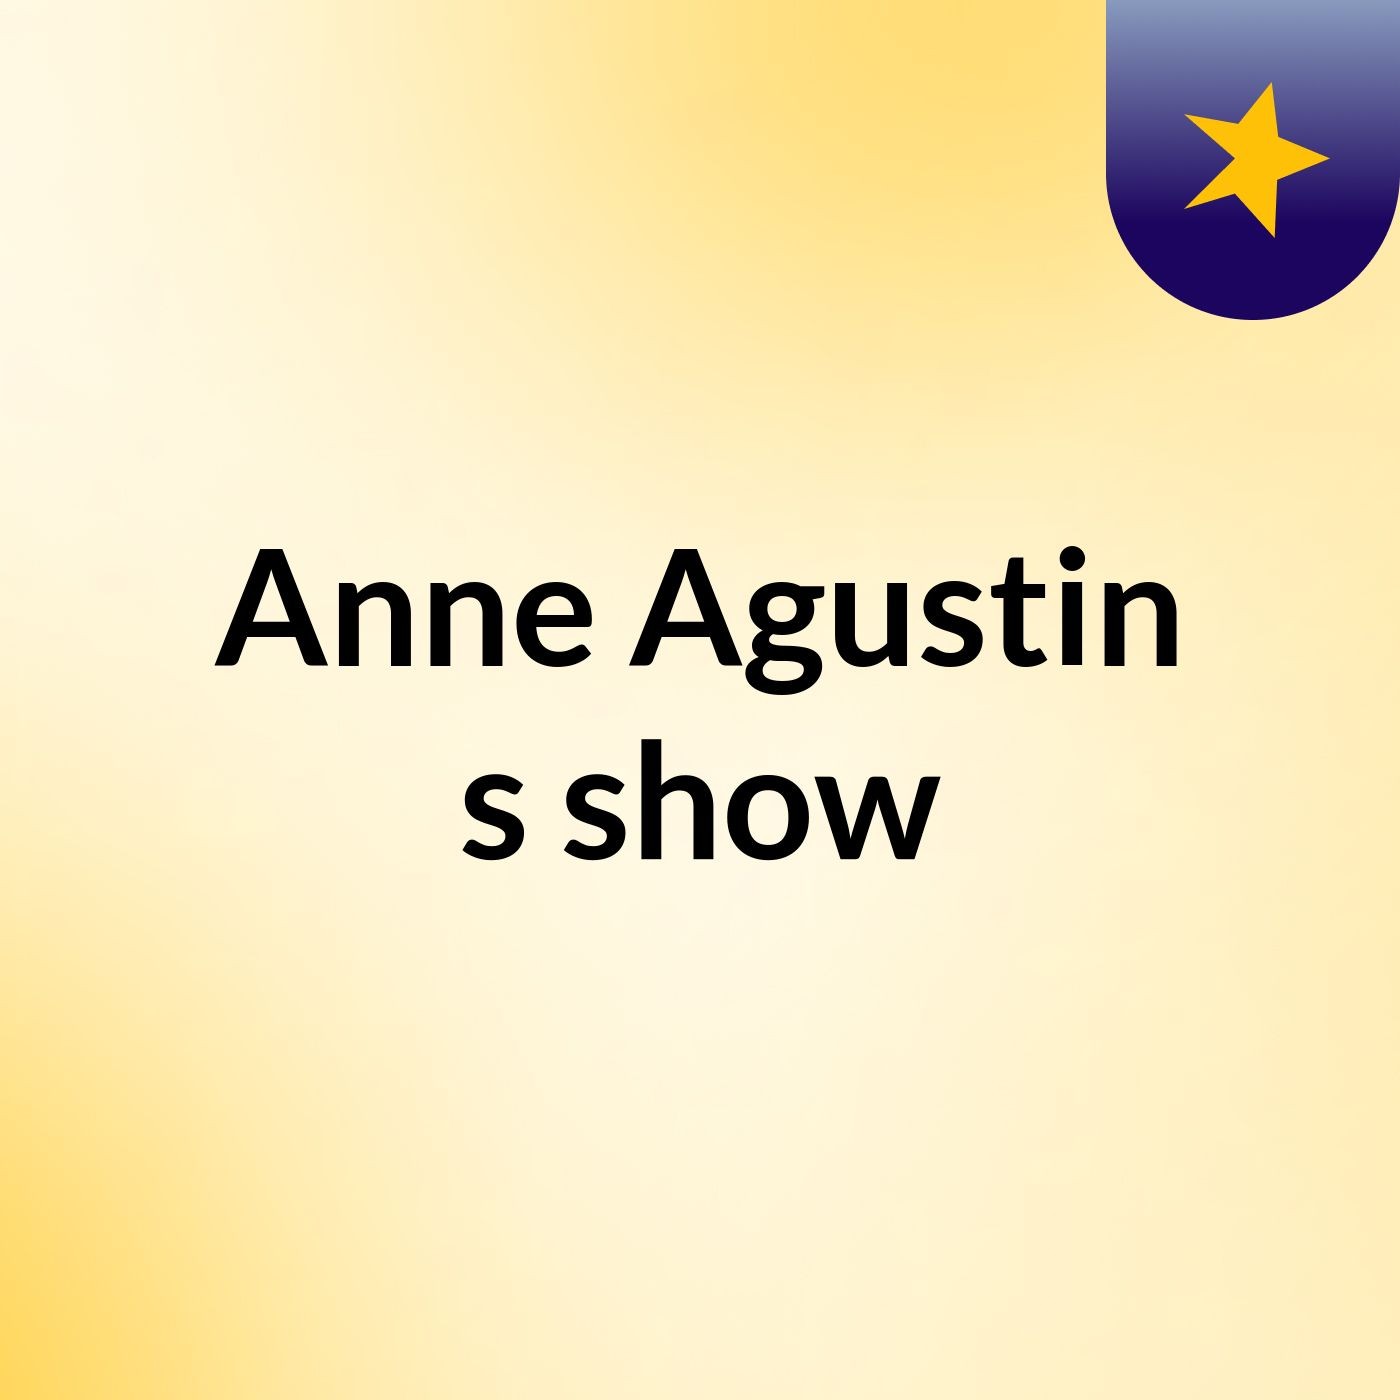 Anne Agustin's show